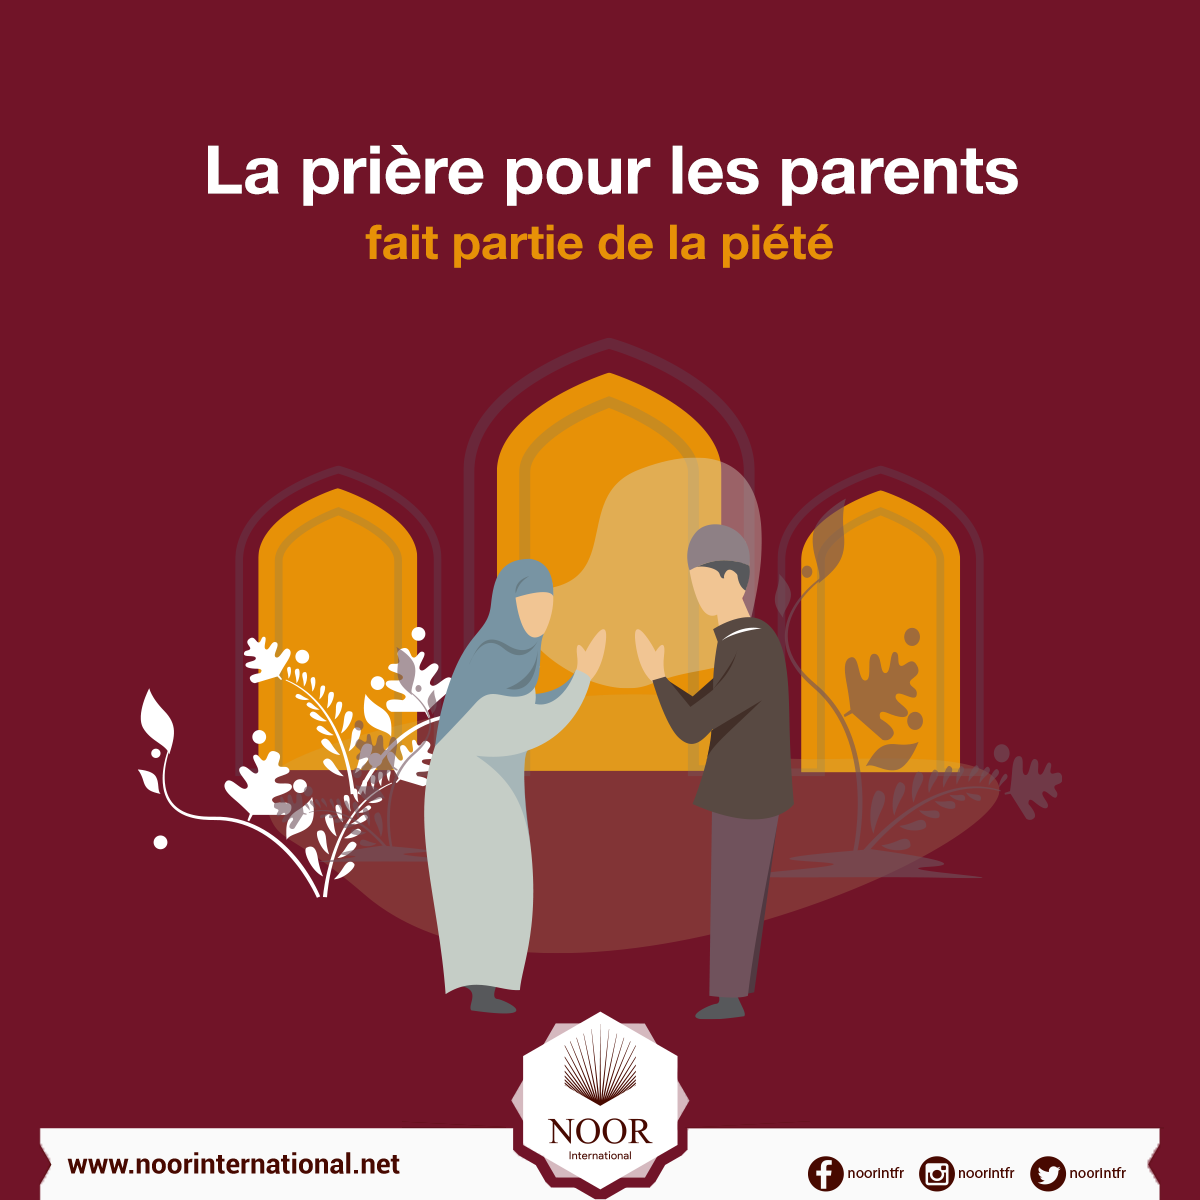 La prière pour les parents fait partie de la piété